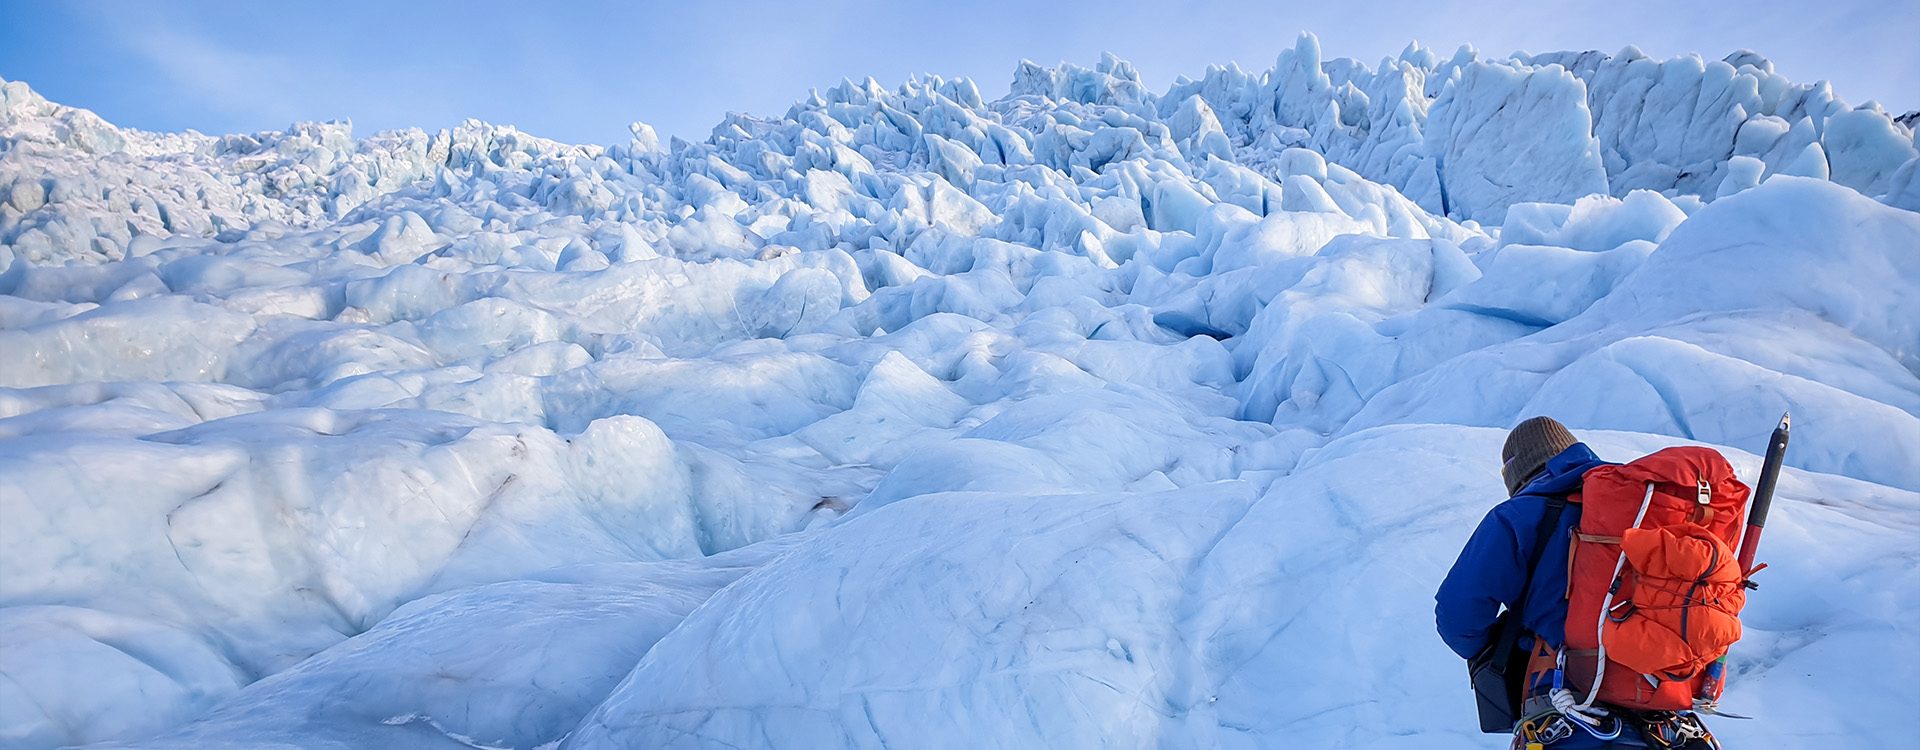 falljokull icefall